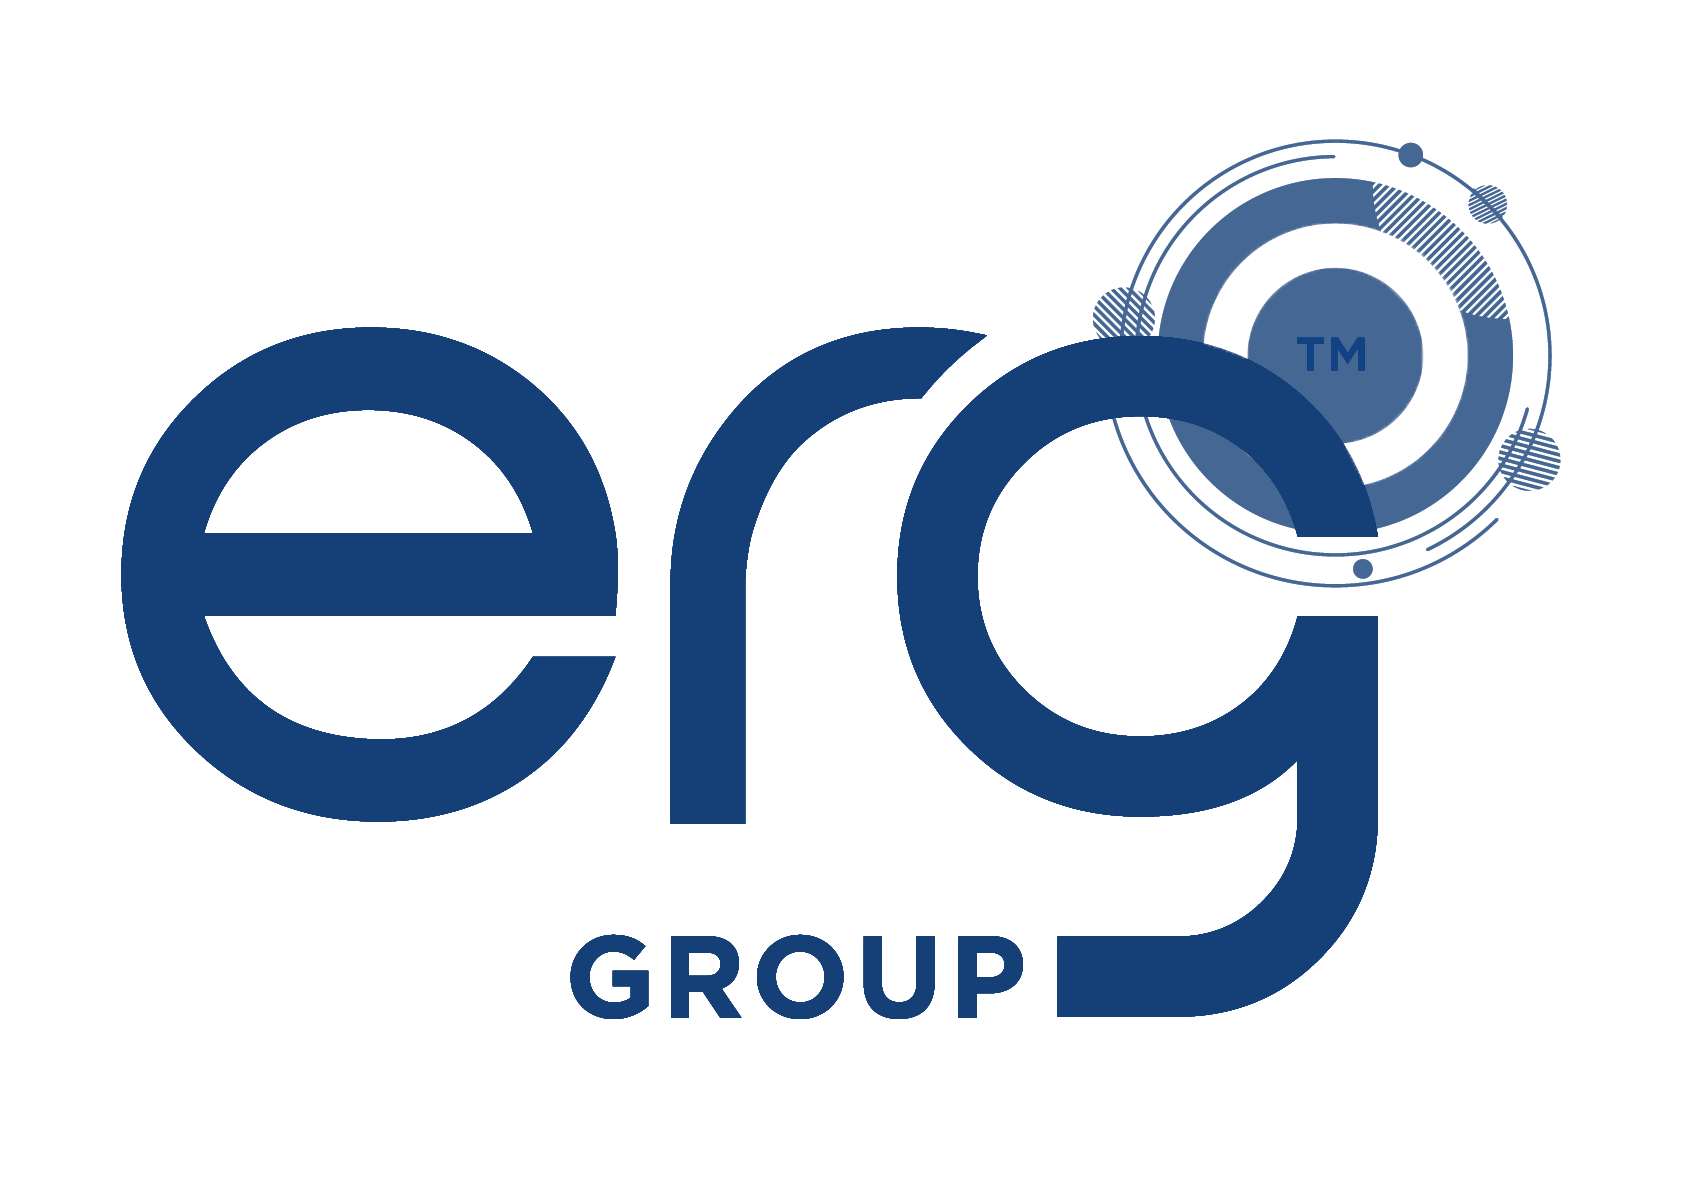 ERG_Group_Transparent 2.png